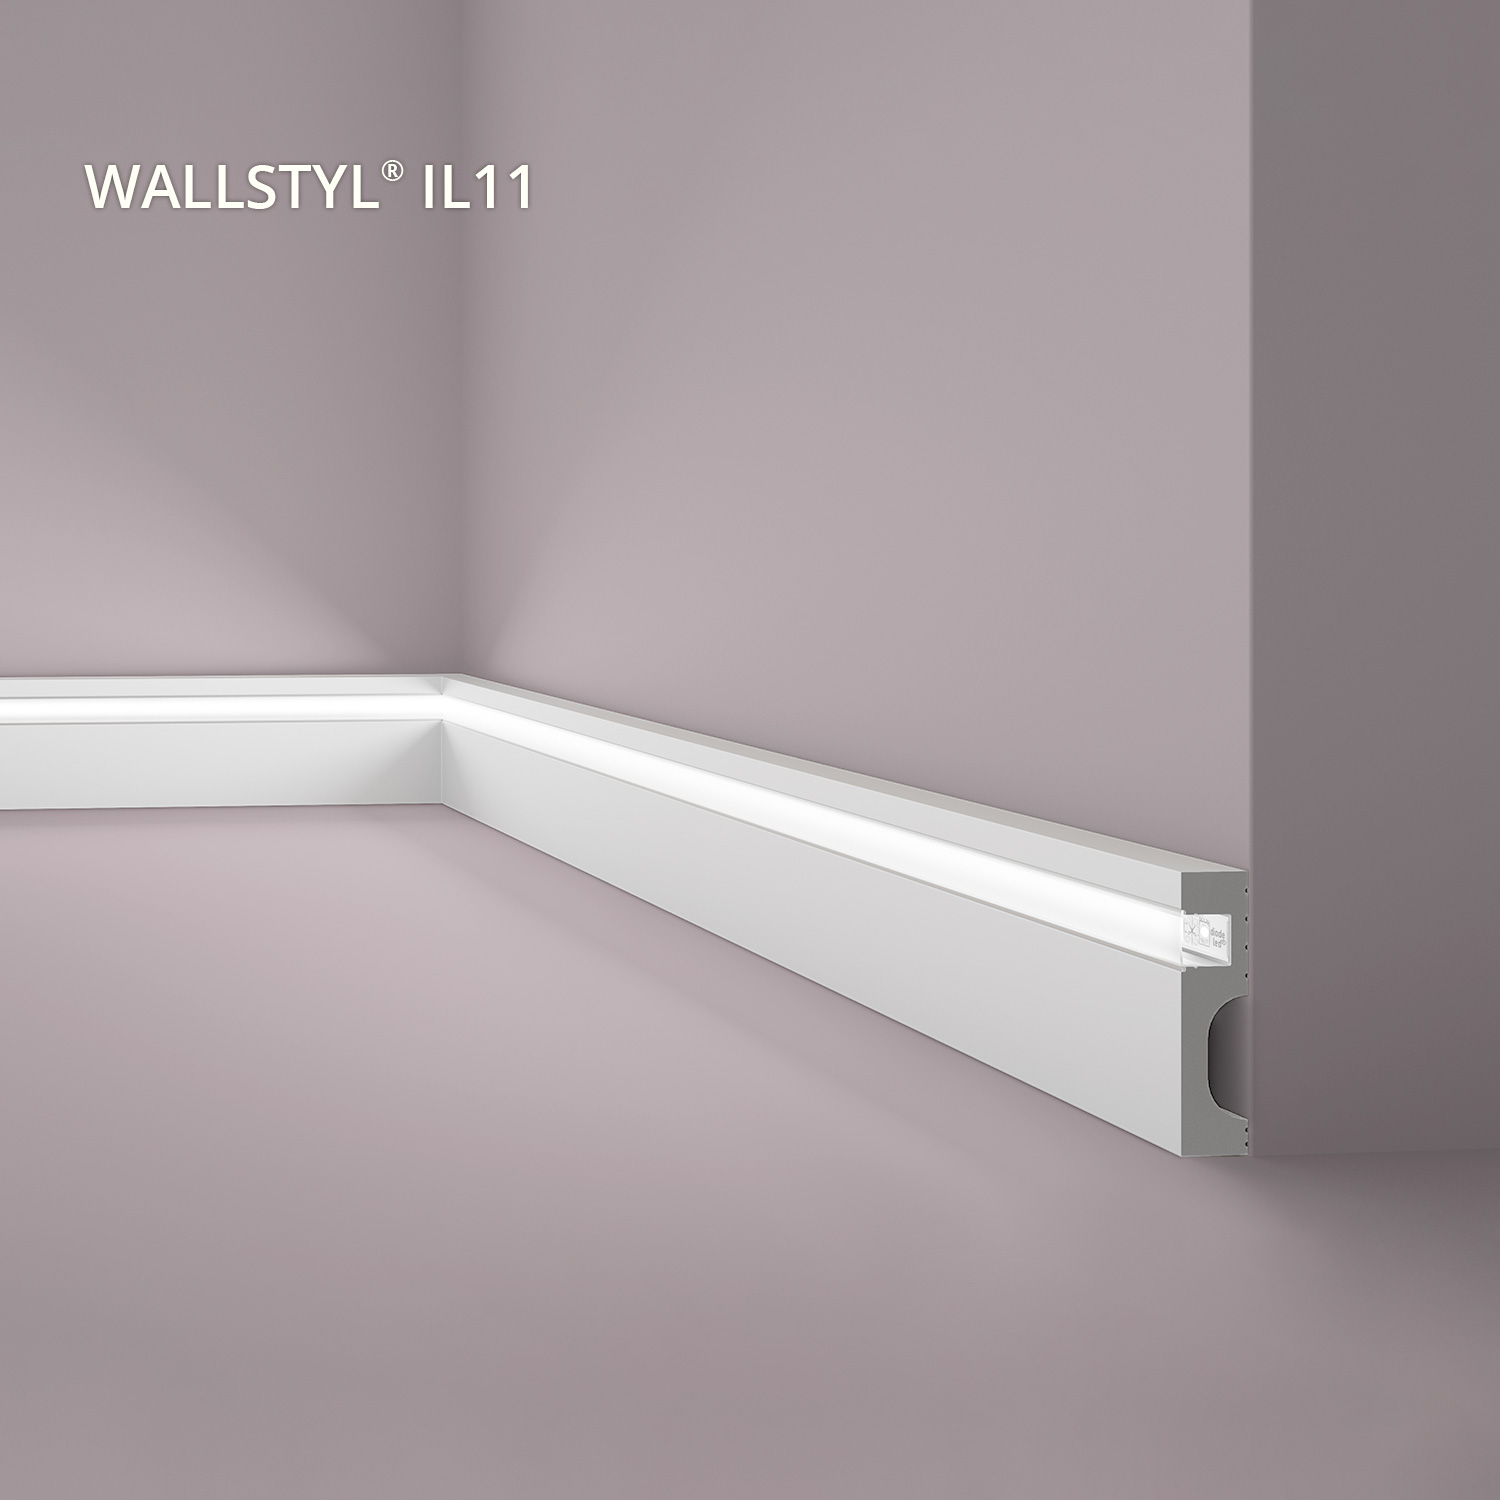 Decke : Sockelleiste NMC IL11 WALLSTYL Noel Marquet Zierleiste Stuckleiste  für Indirekte Beleuchtung inkl. Licht-Diffusor Modernes Design grau 2 m